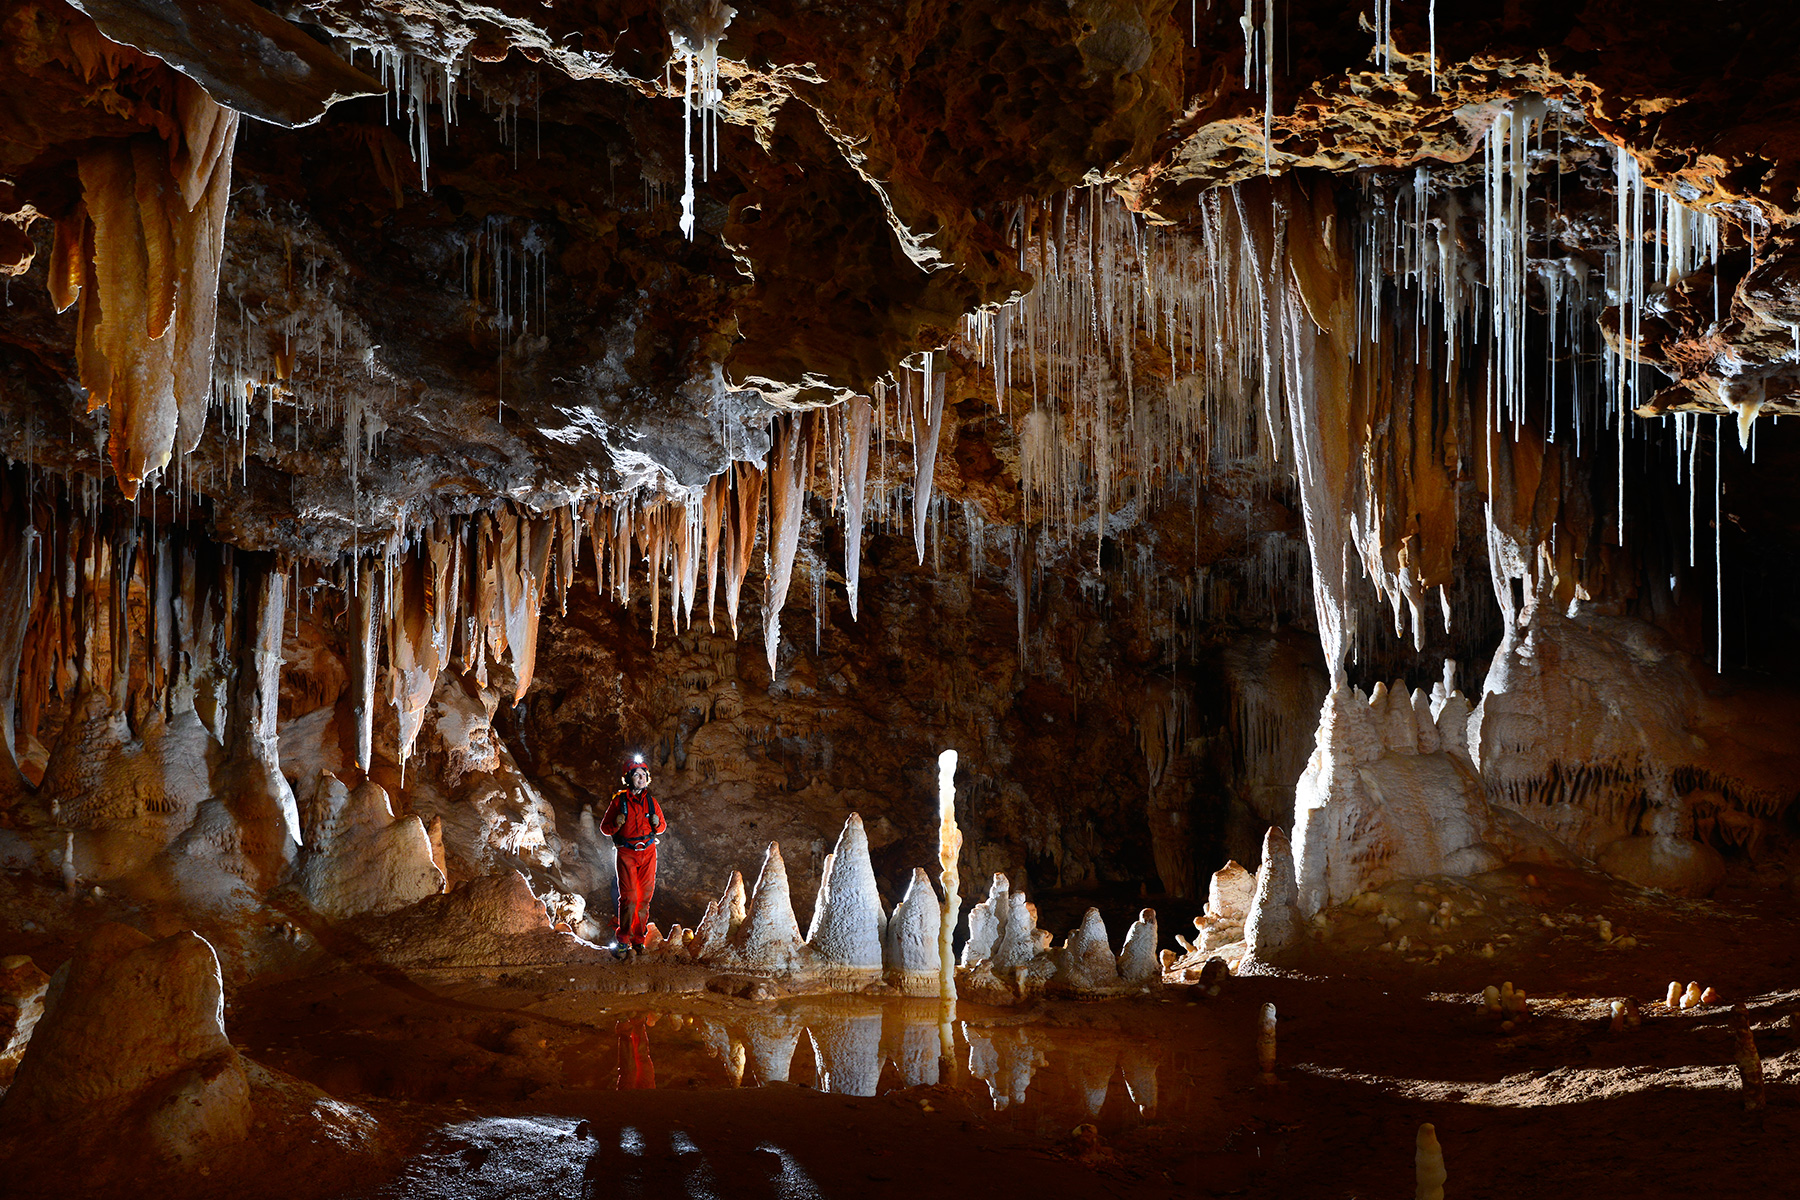 Grotte de Clamouse - Fenêtre dans un ensemble de piliers, stalagmites et stalactites massives (la mâchoire) avec spéléo sur le côté.